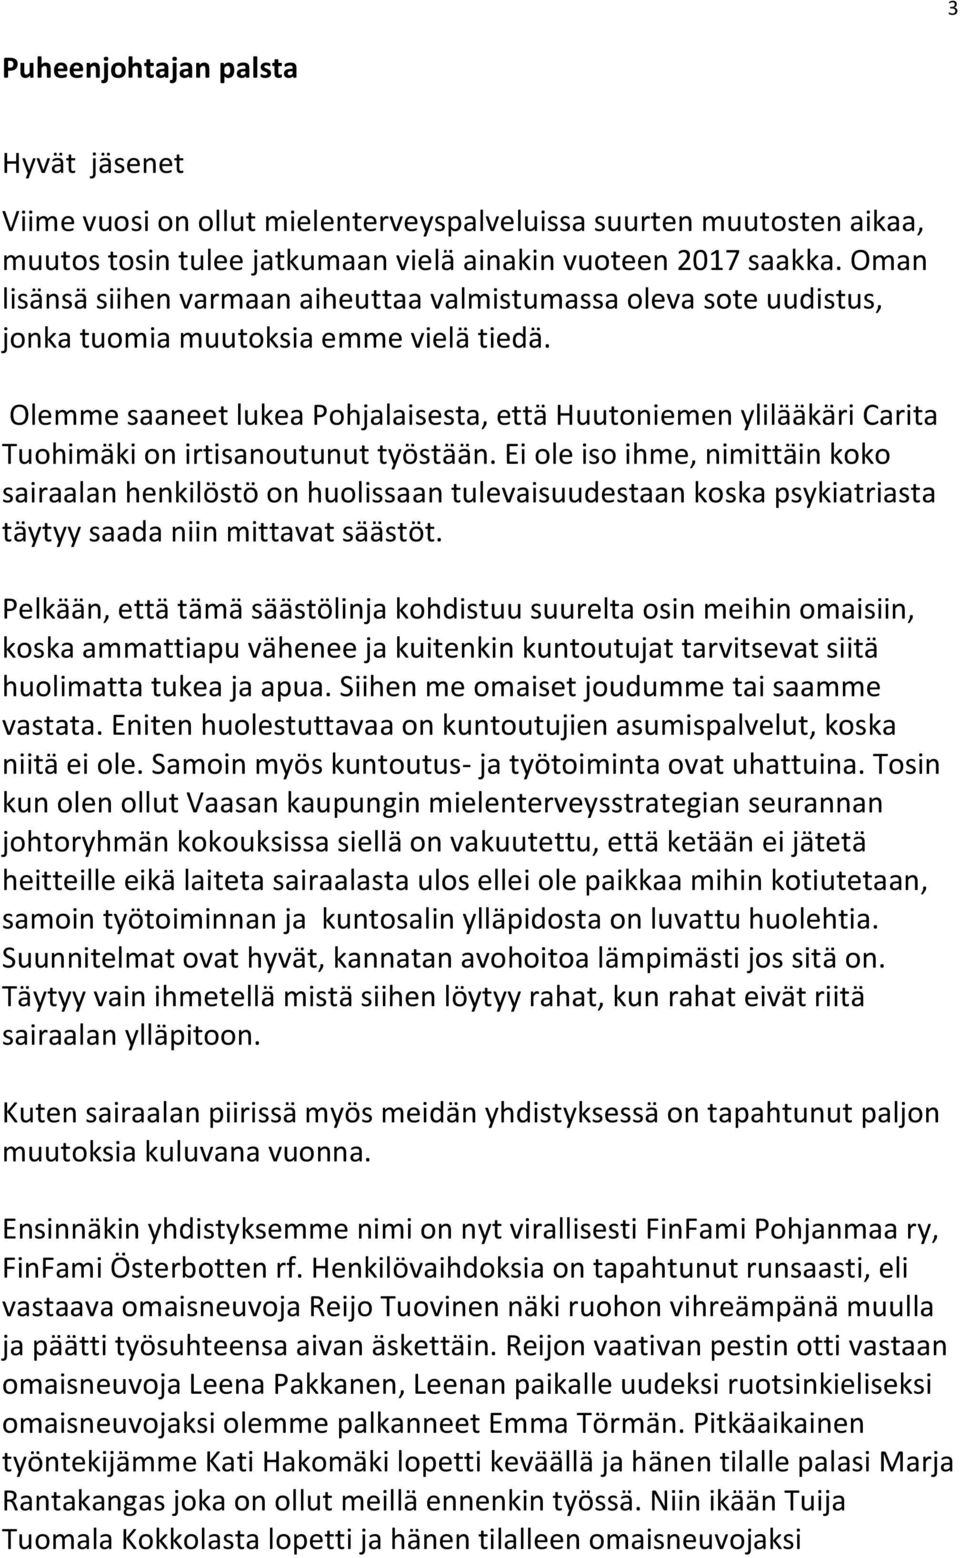 Olemme saaneet lukea Pohjalaisesta, että Huutoniemen ylilääkäri Carita Tuohimäki on irtisanoutunut työstään.